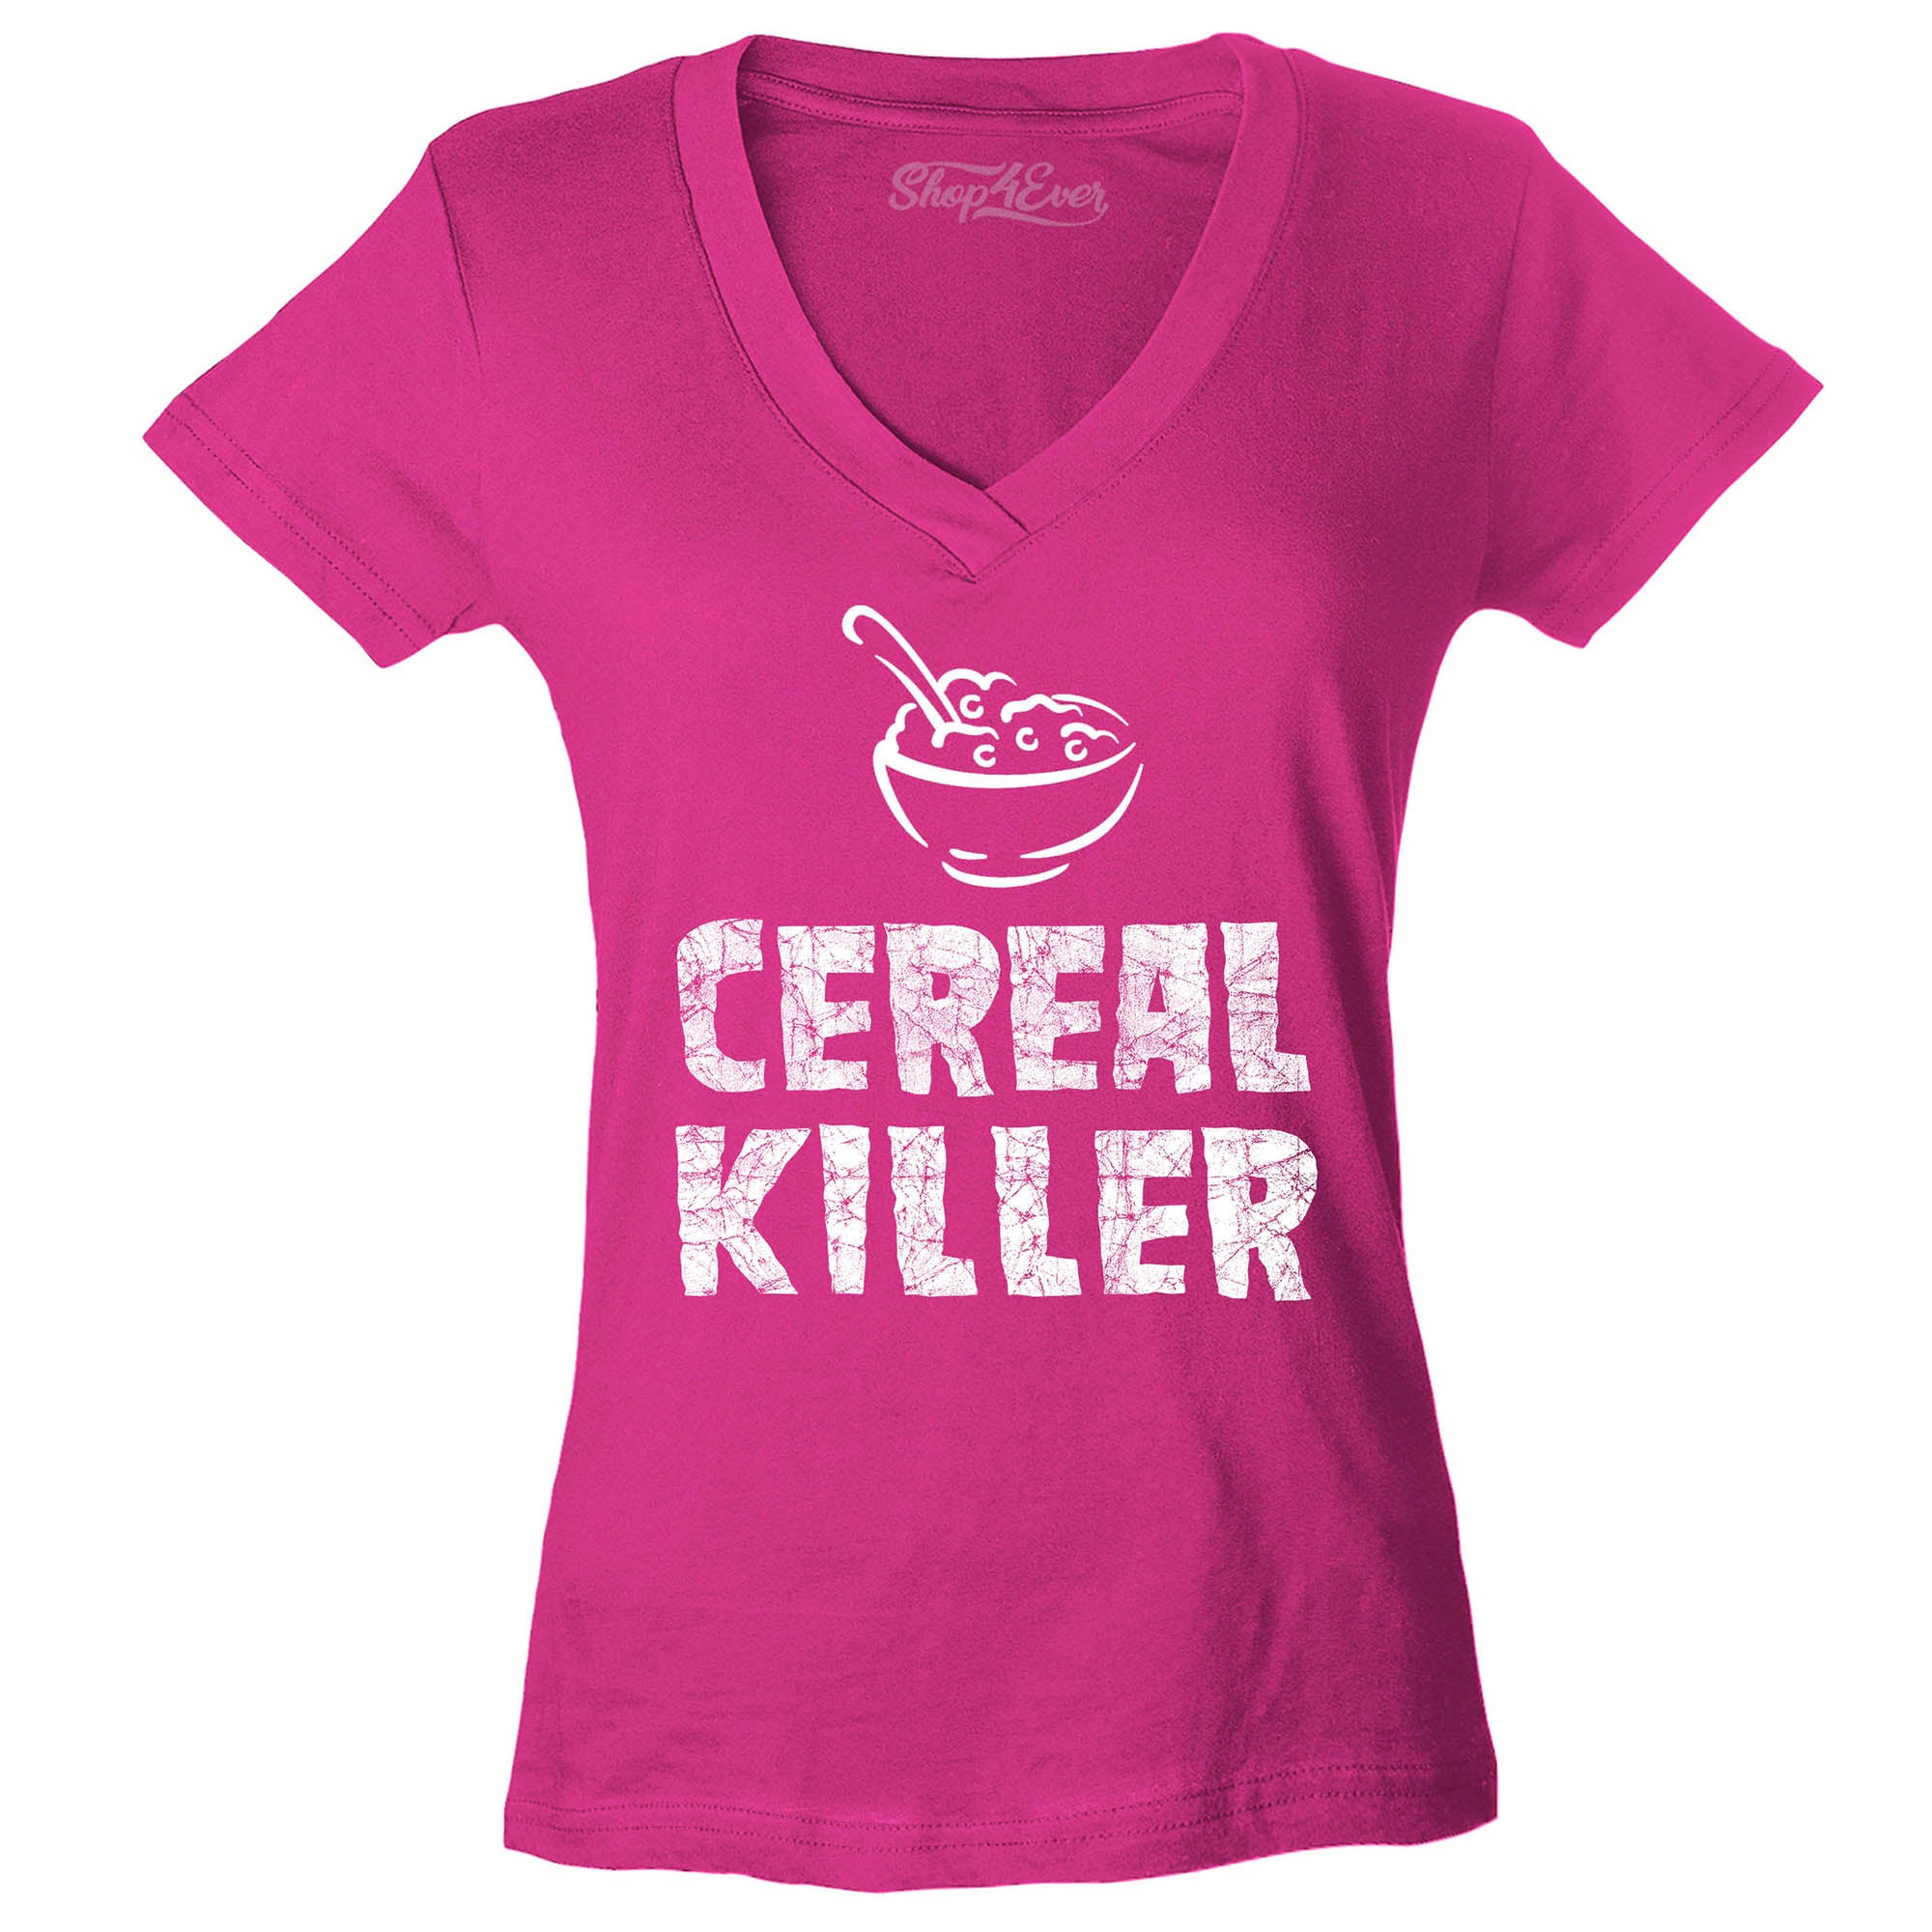 Cereal Killer Women's V-Neck T-Shirt Funny Shirts Slim FIT